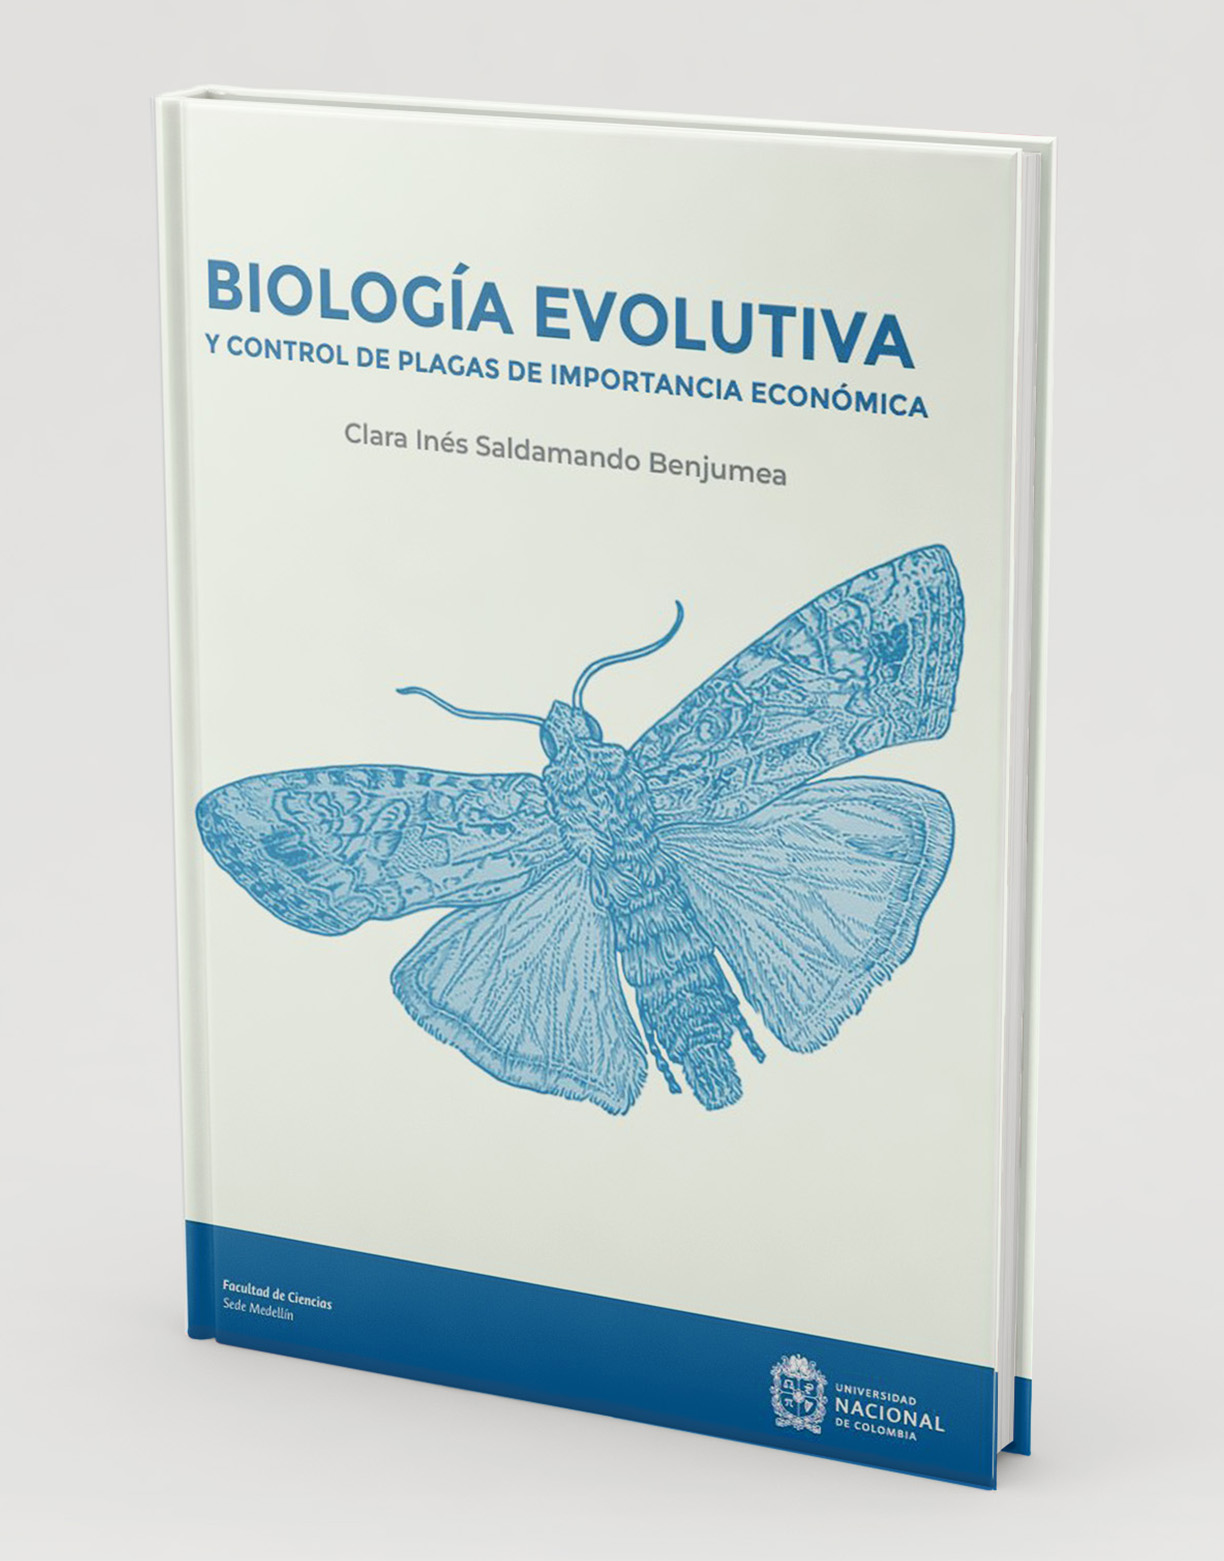 Biología evolutiva y control de plagas de importancia económica.